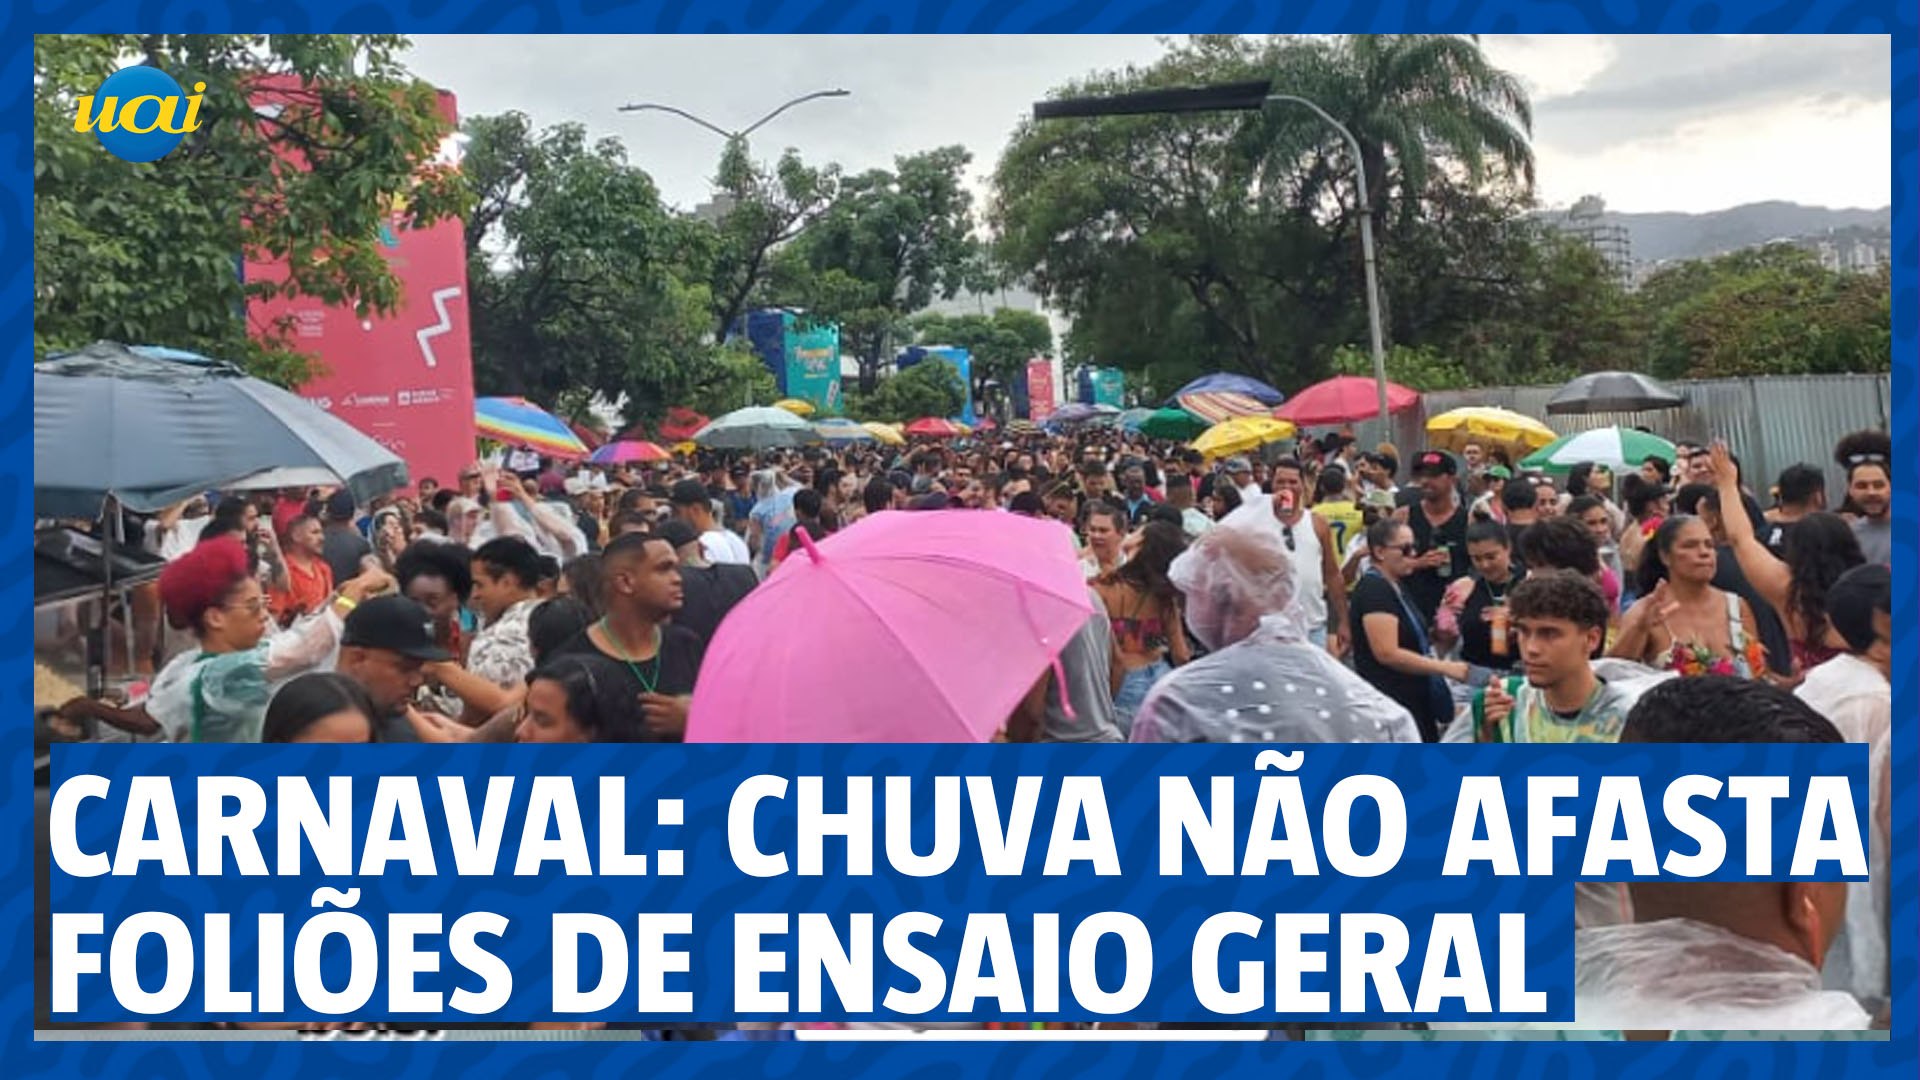 Carnaval: chuva não afasta foliões de ensaio geral